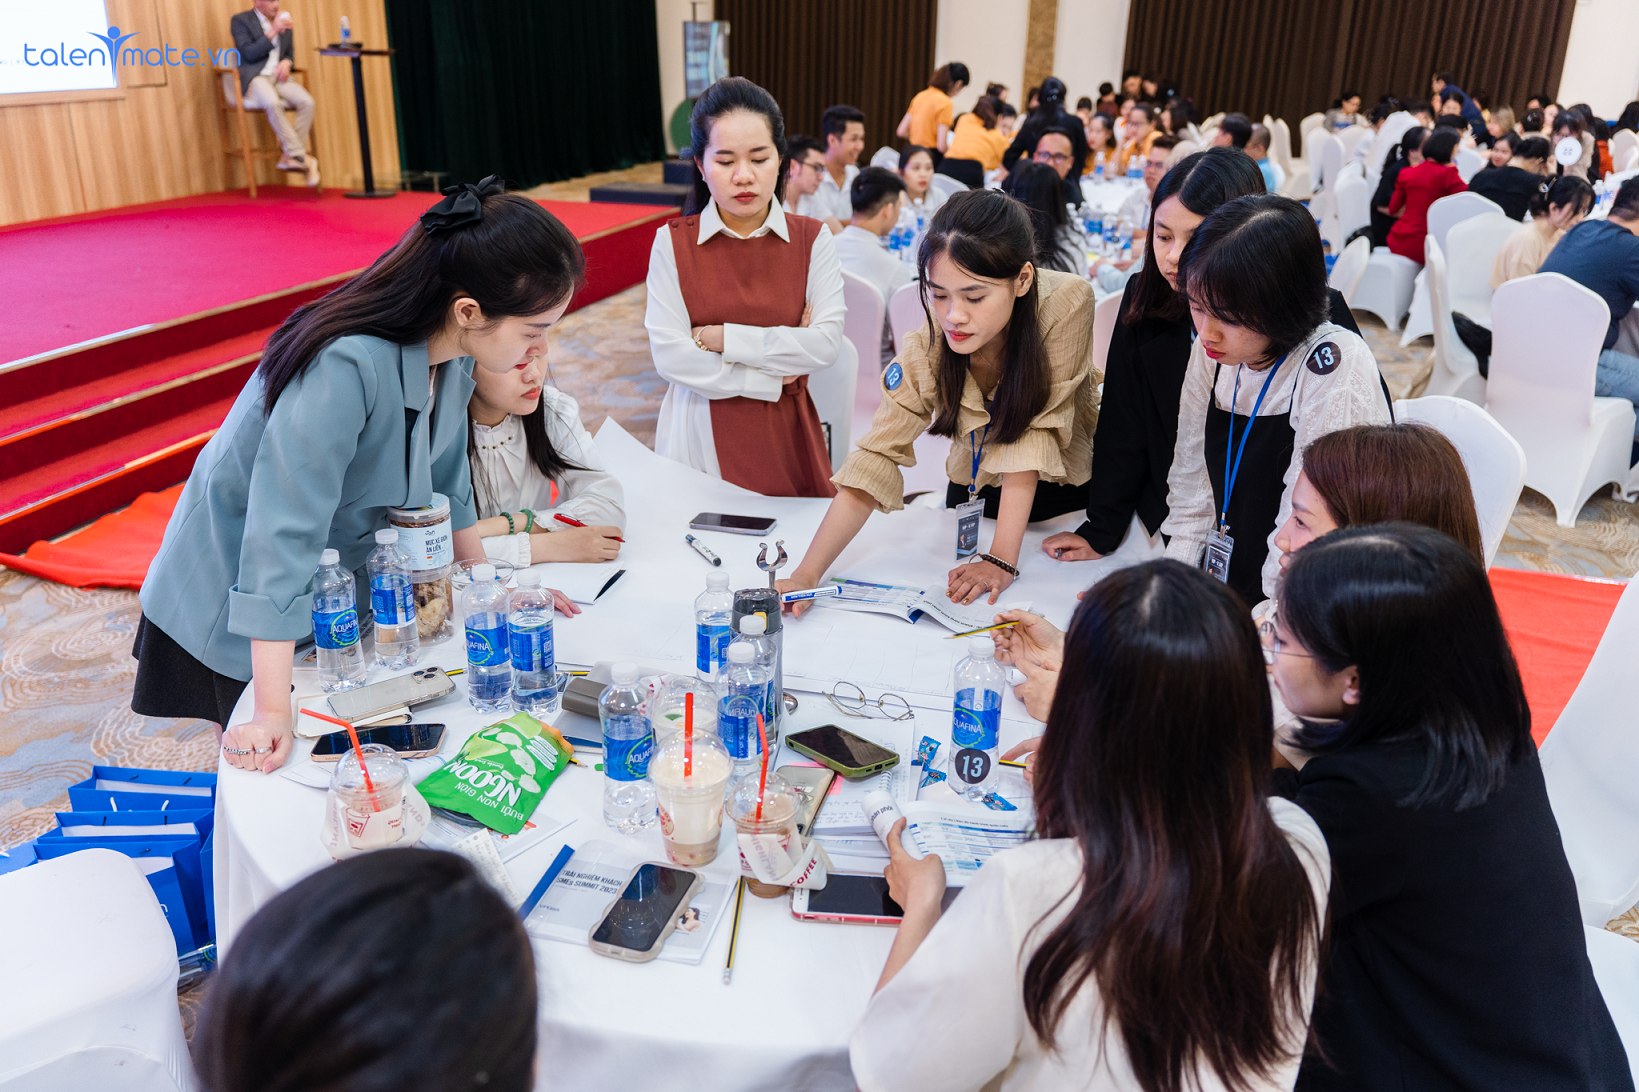 Talentmate ghi dấu với event Trải nghiệm khách hàng cùng chuyên gia Nguyễn Dương - Ảnh 3.